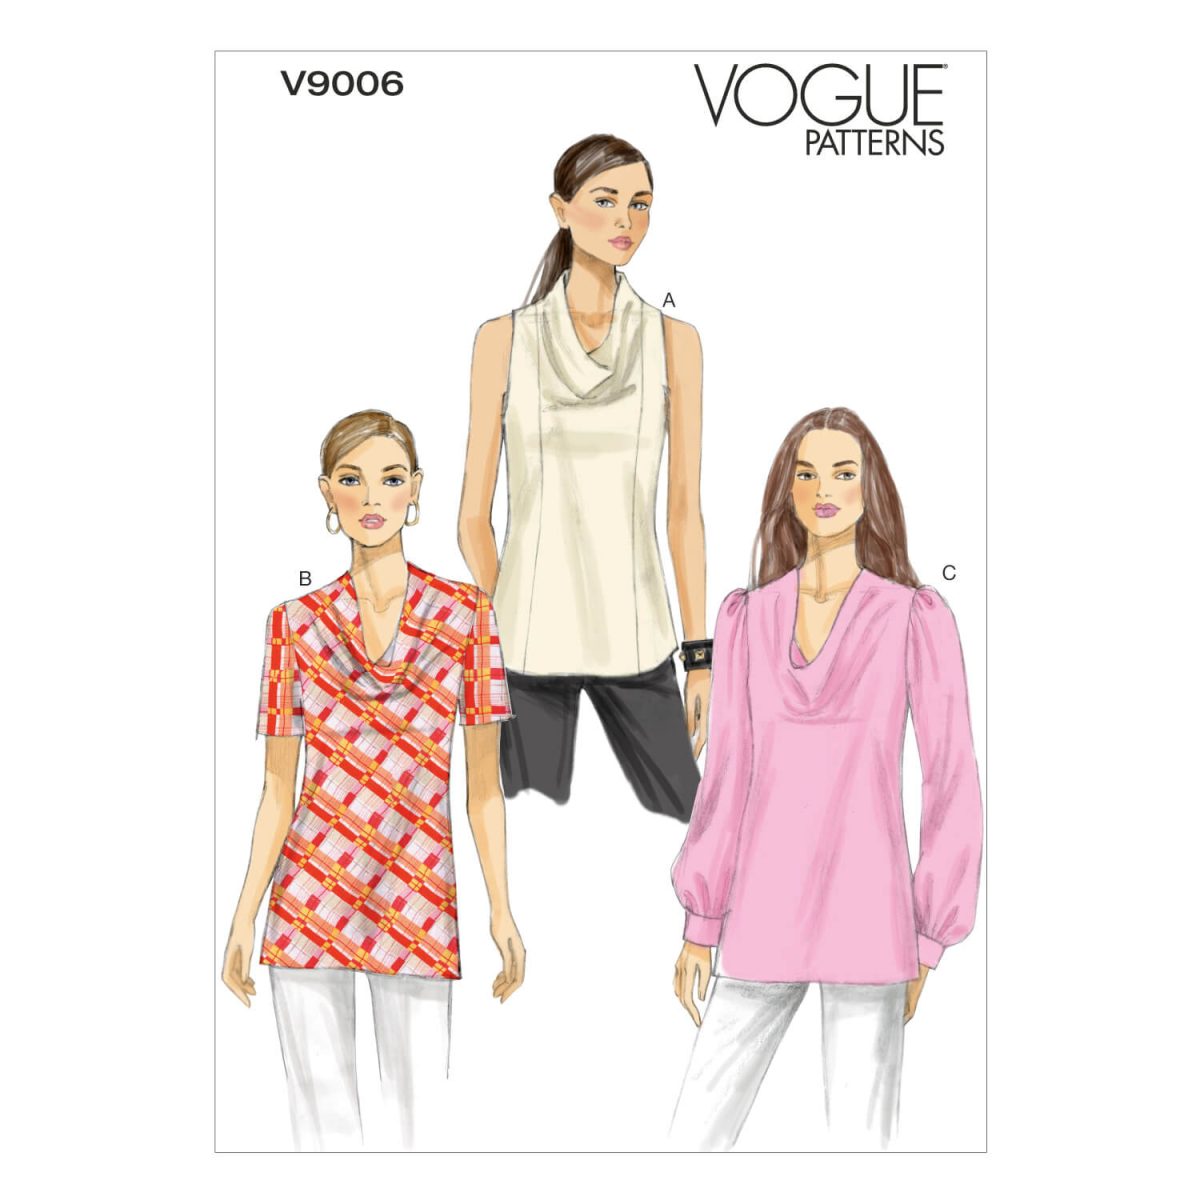 Vogue Patterns V9006 Misses' Top